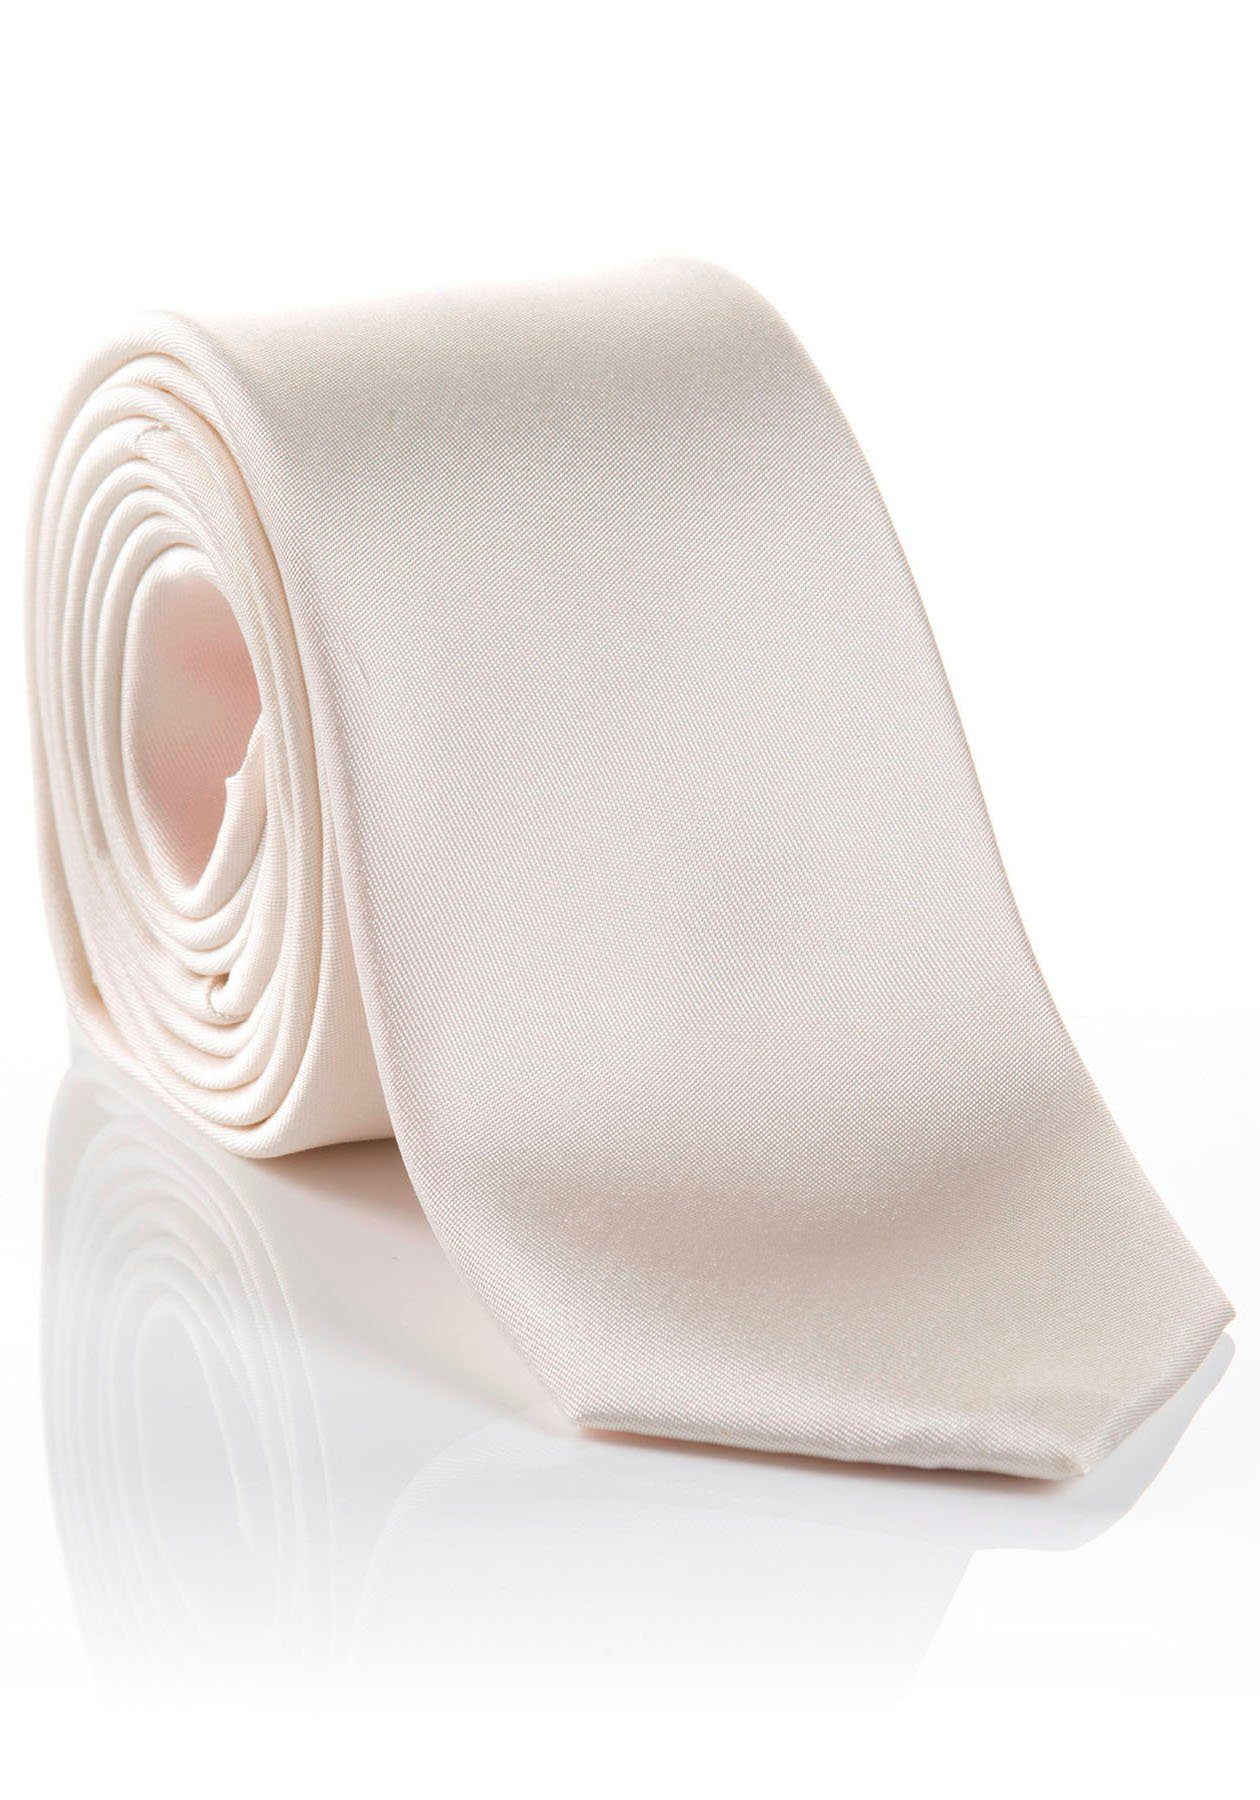 MONTI Krawatte LIVIO Hochwertig verarbeitete Seidenkrawatte mit hohem Tragekomfort | Breite Krawatten